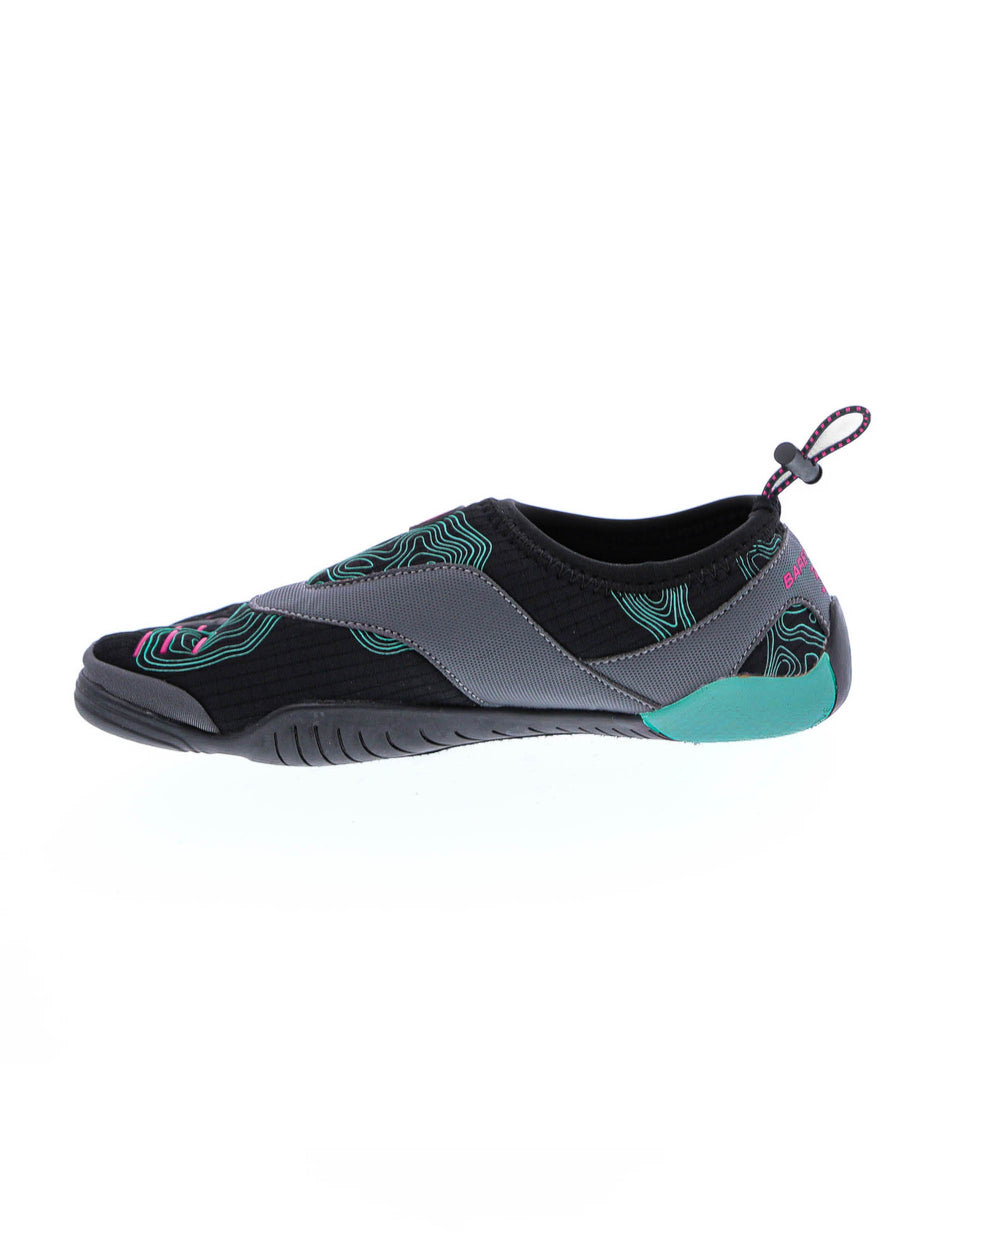 Women's 3T Barefoot Cinch Water Shoes - Black/Fuschia - Body Glove